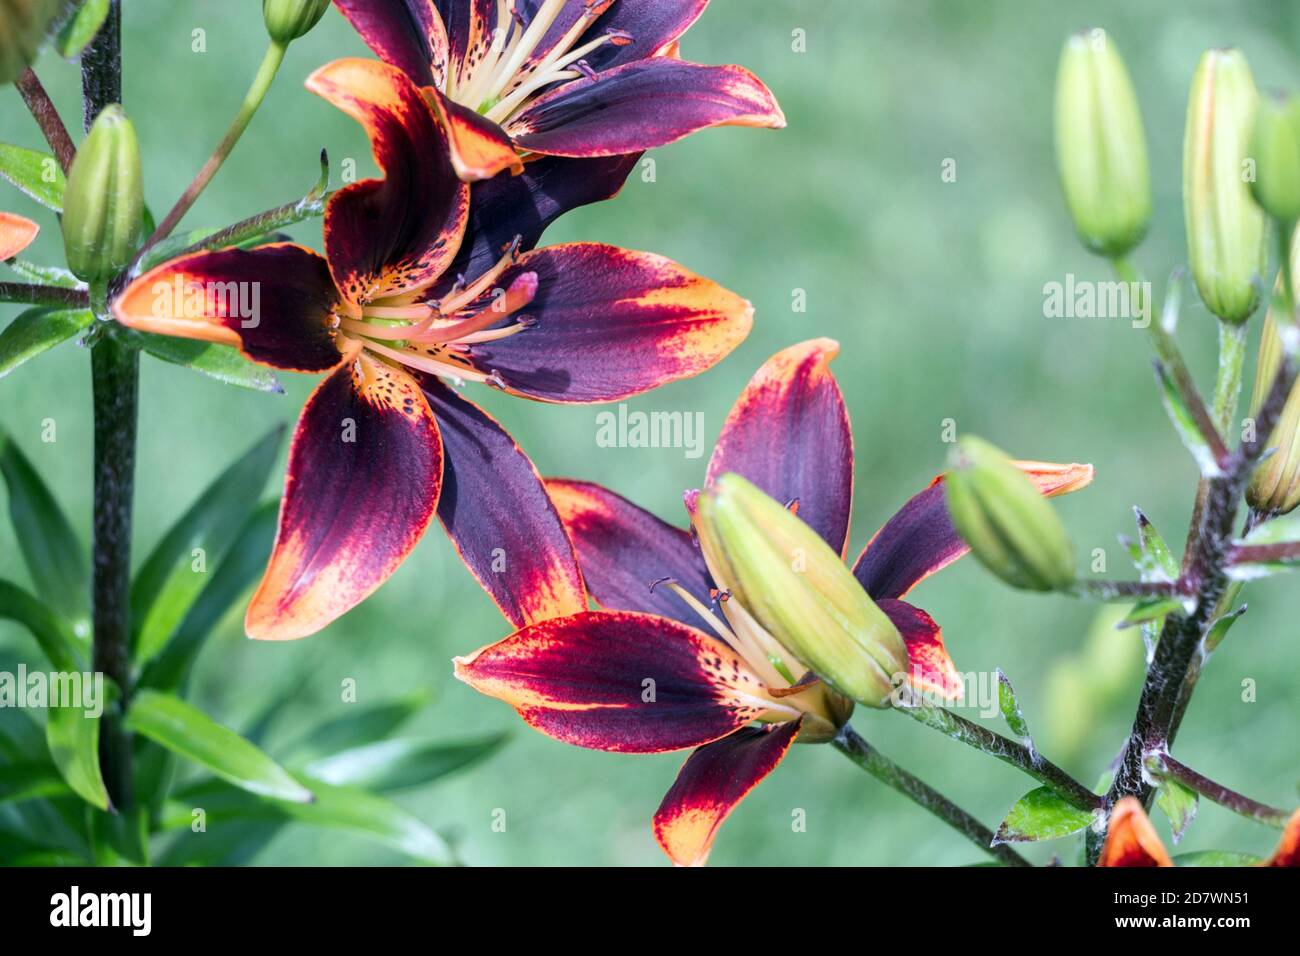 Fleur de lys asiatiques violettes dans un jardin verdoyant Photo Stock -  Alamy